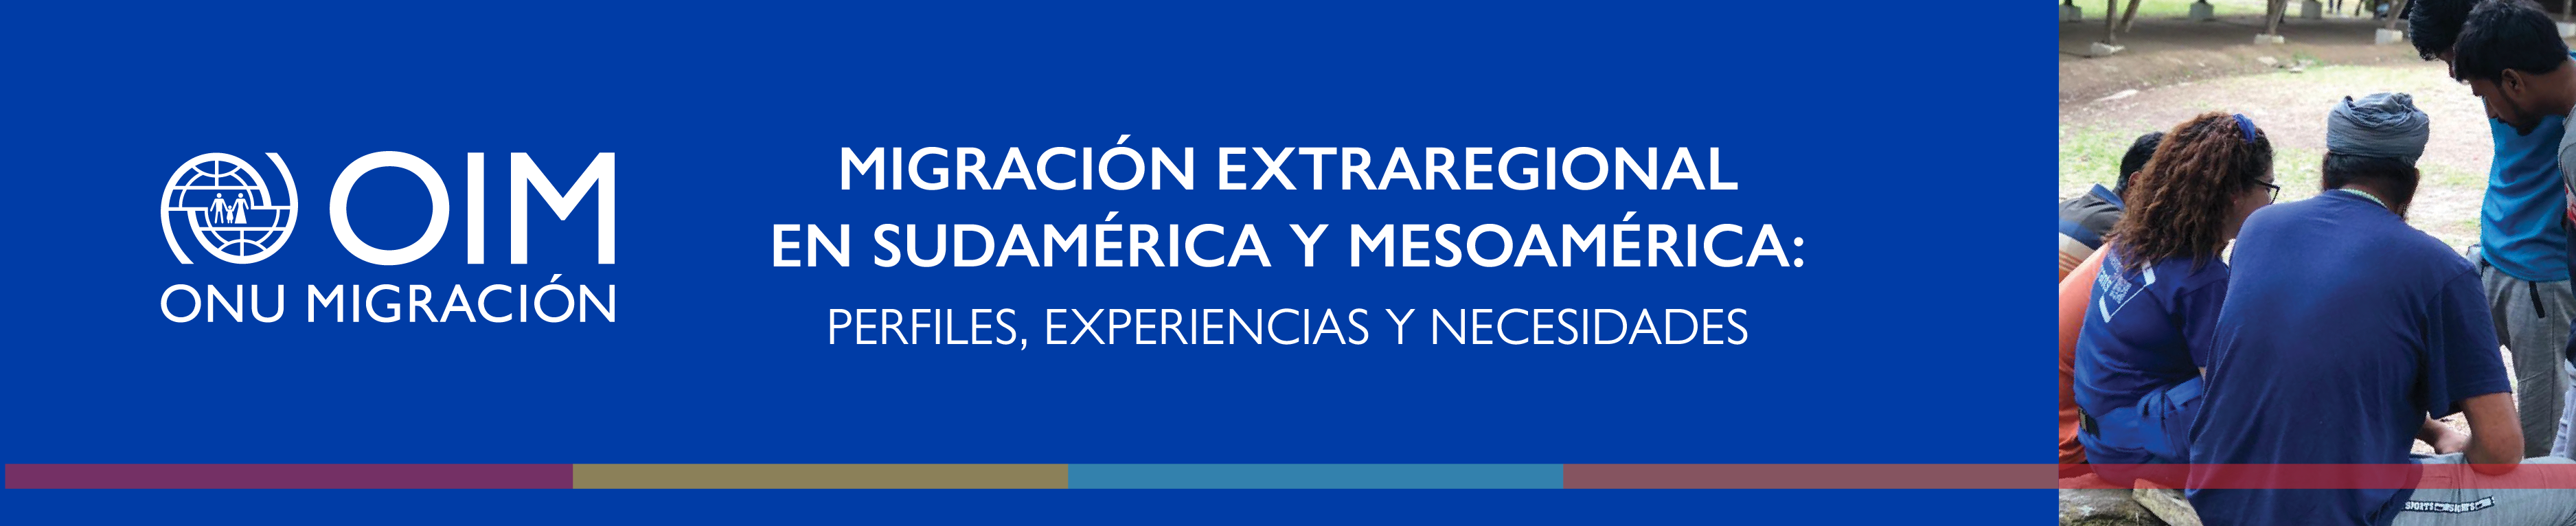 Migración extraregional en Sudamérica y Mesoamérica: Perfiles, experiencias y necesidades